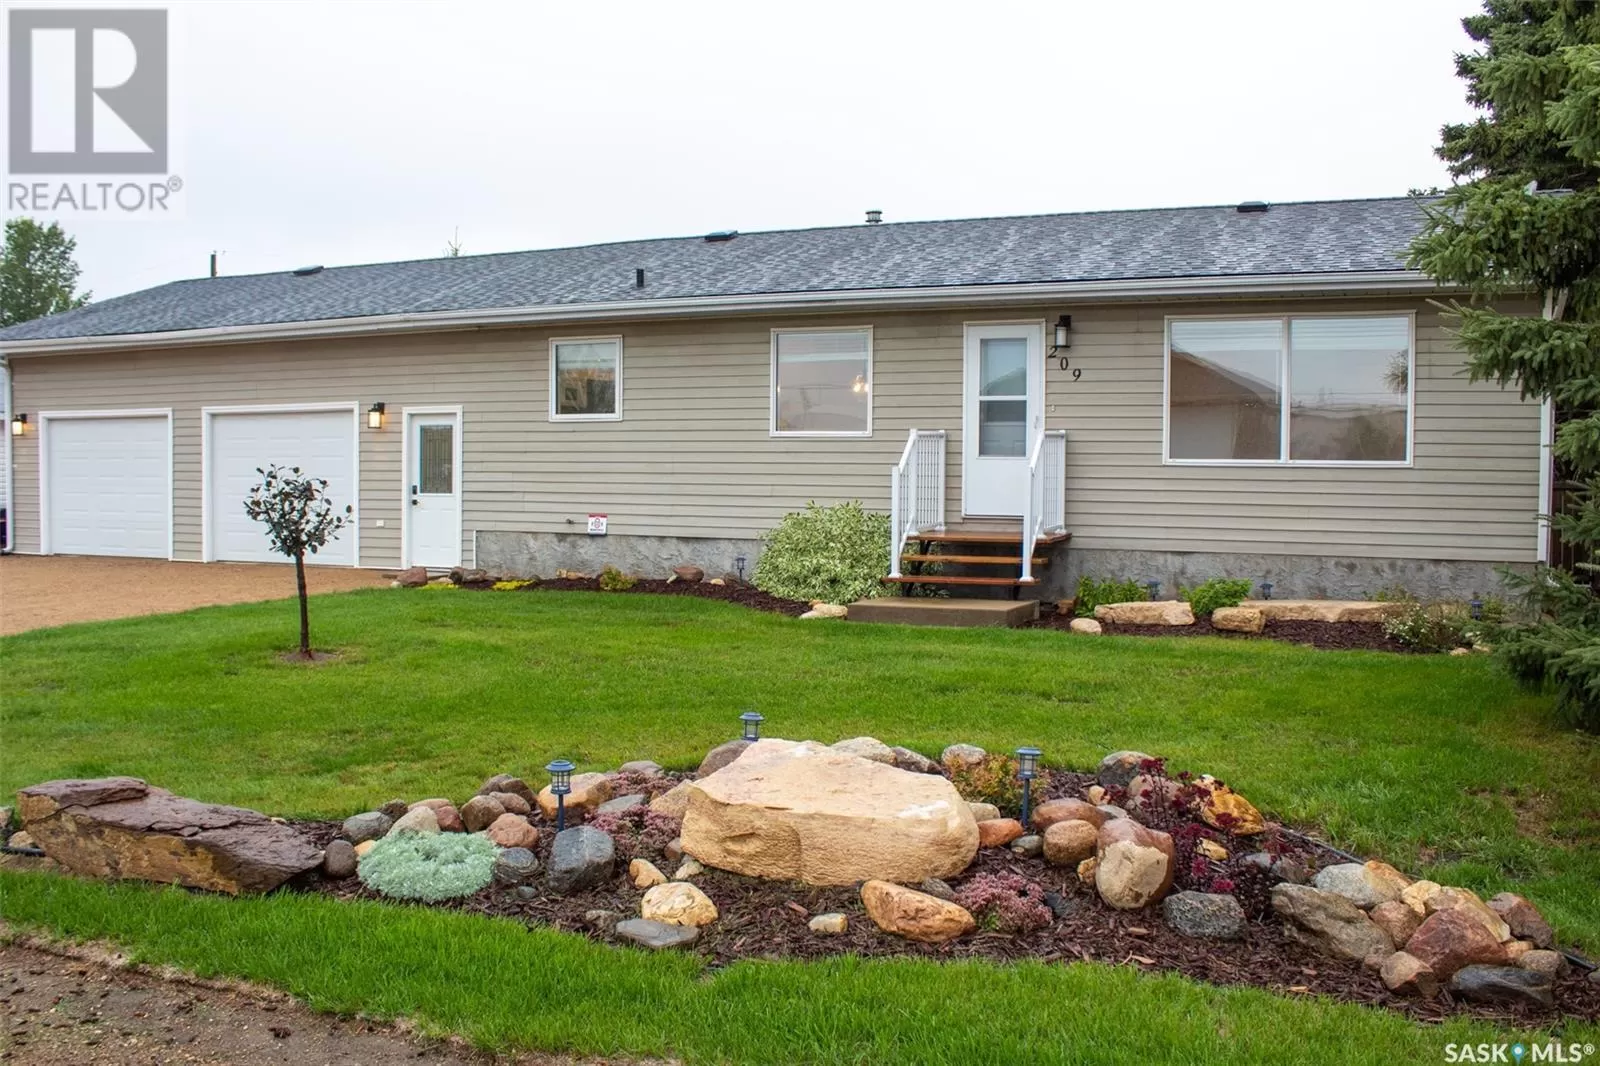 House for rent: 209 4th Avenue S, St. Brieux, Saskatchewan S0K 3V0